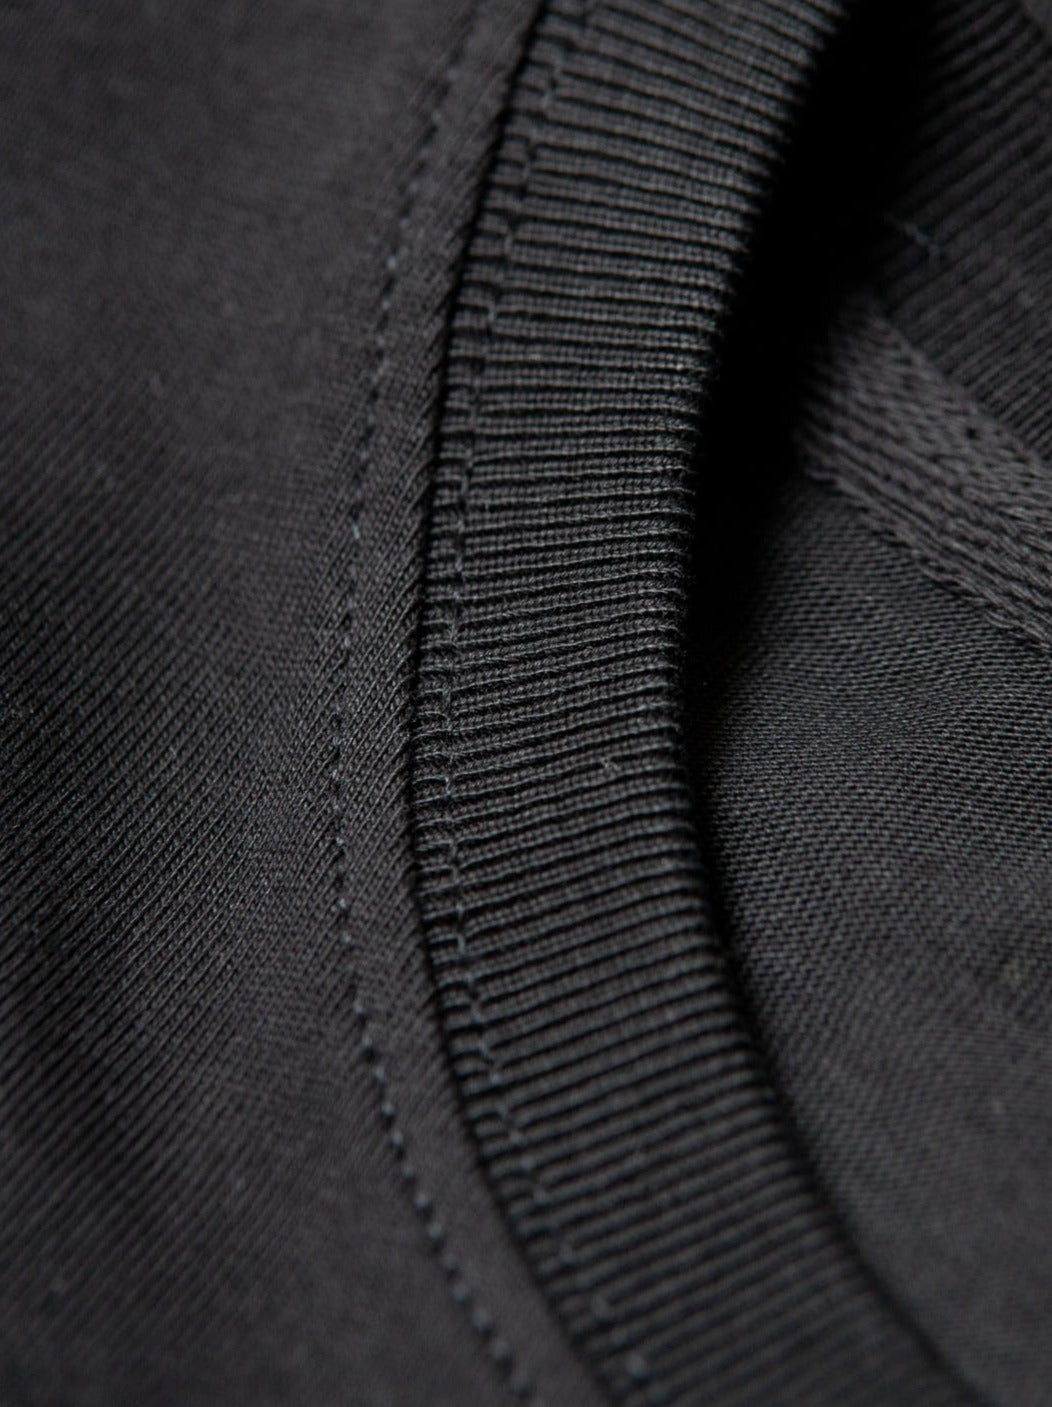 Detailansicht vom Kragen eines nachhaltiges FUXBAU Fair Fashion schweren Basic T-Shirt in schwarz aus Biobaumwolle.